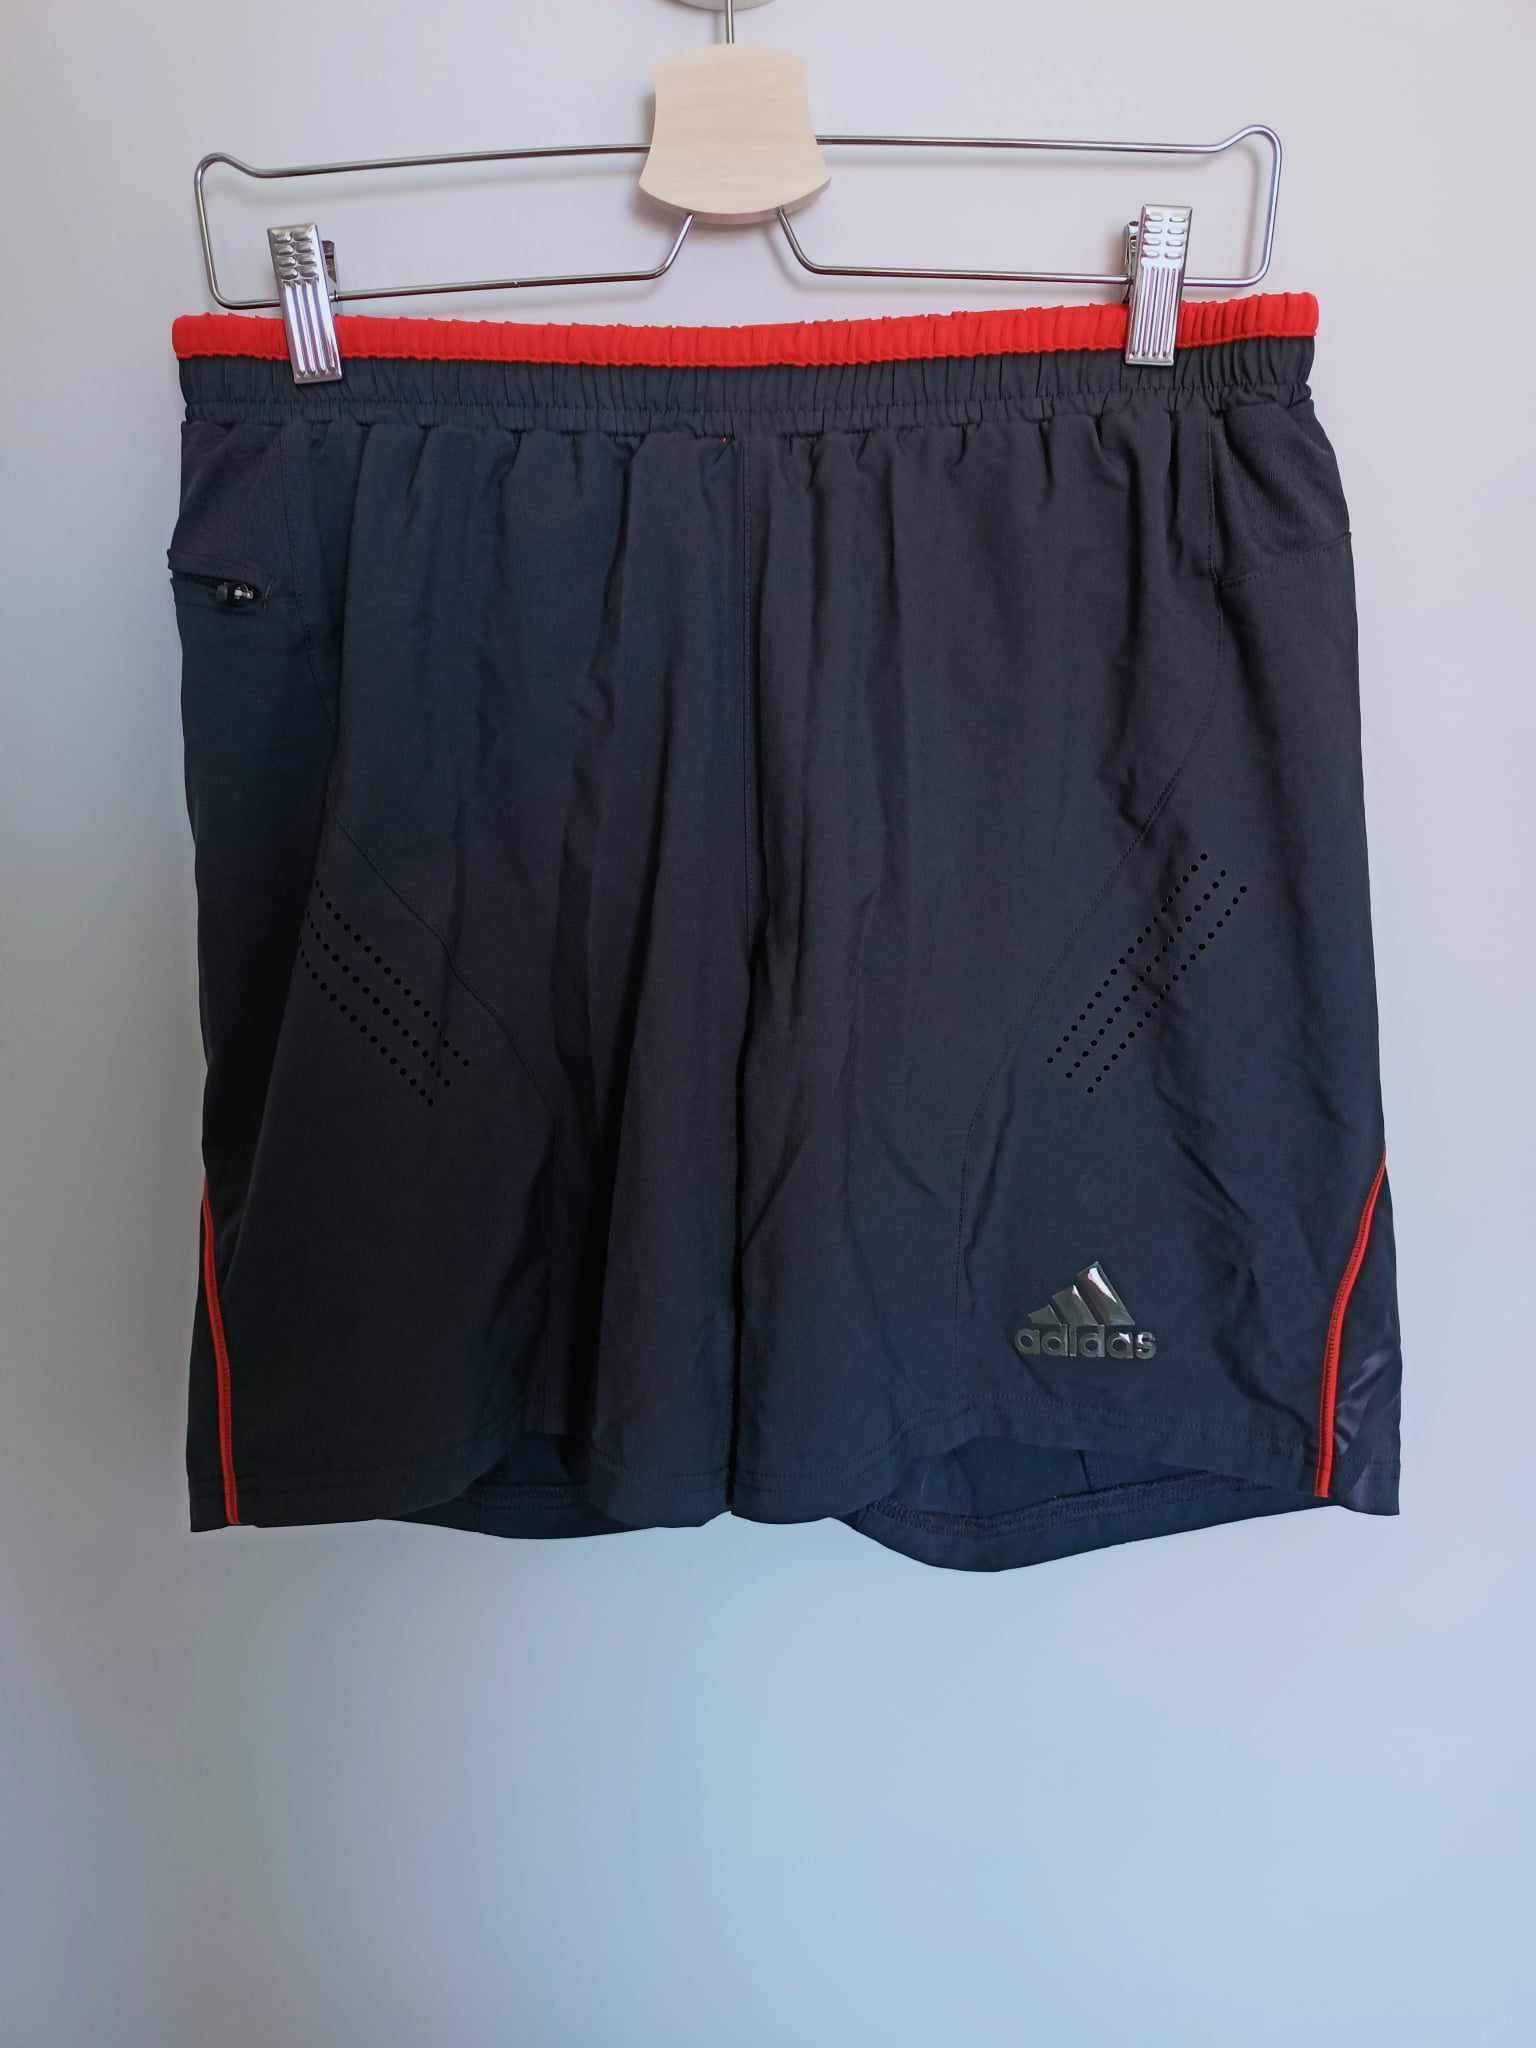 Męskie spodenki/szorty treningowe Adidas - ciemnoszare, rozmiar S